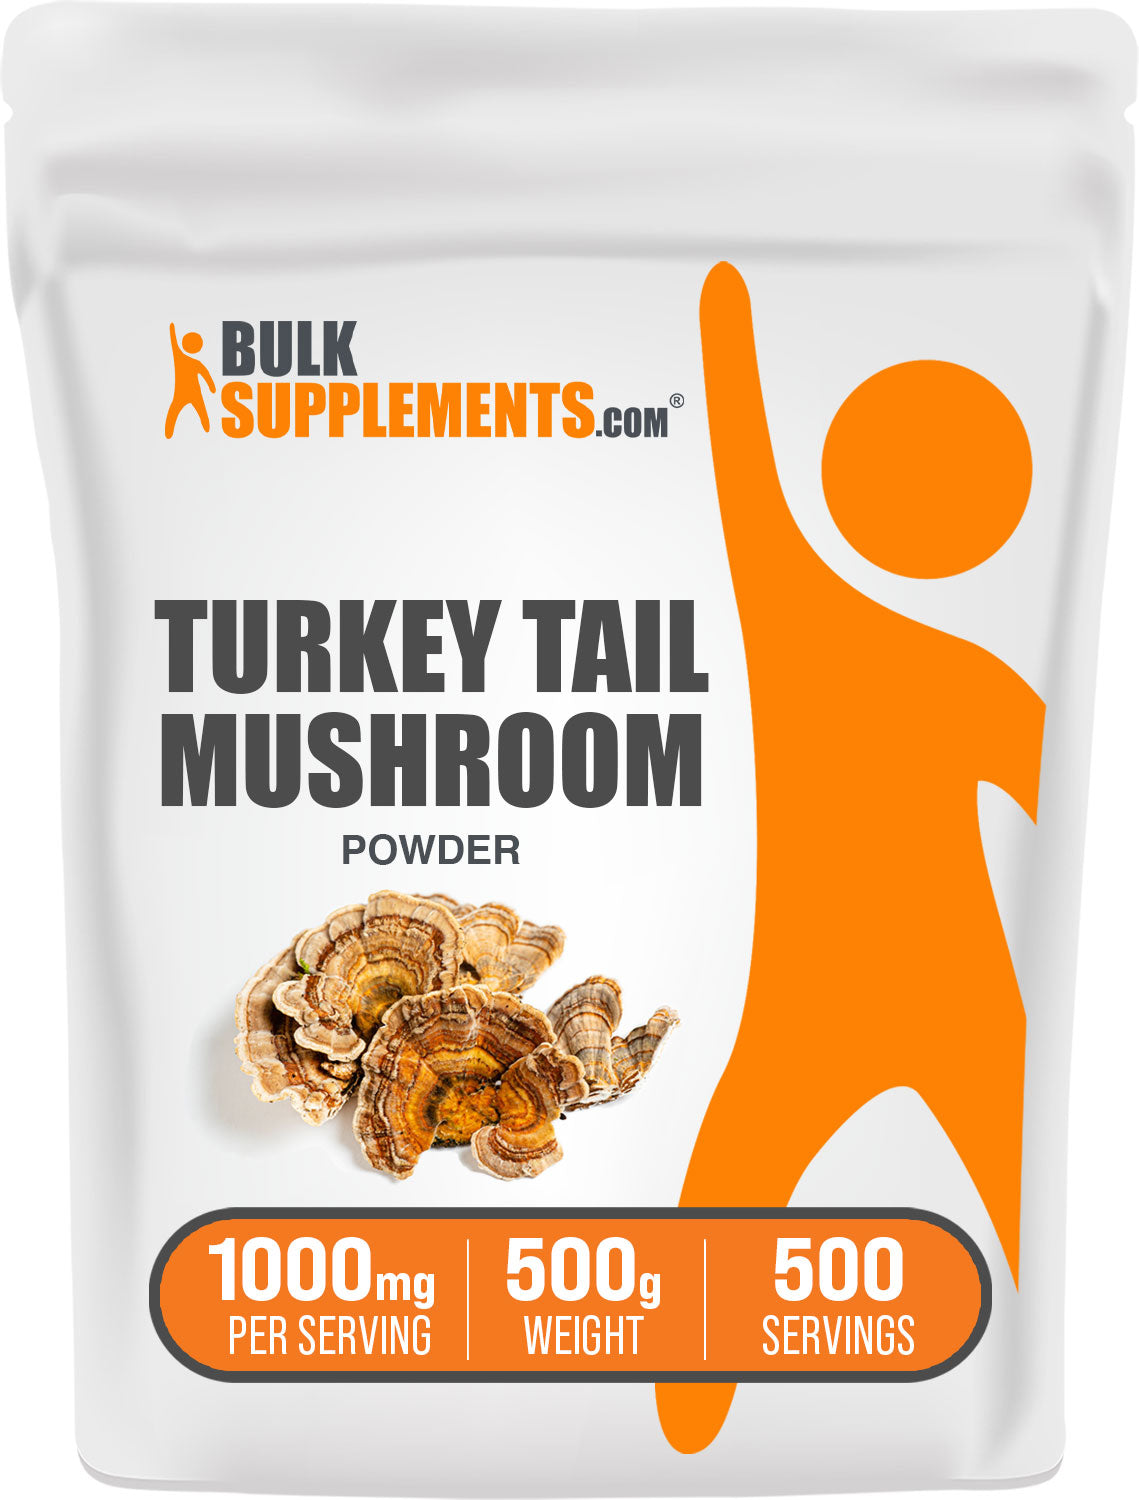 Turkey Tail Mushroom 500g Bag